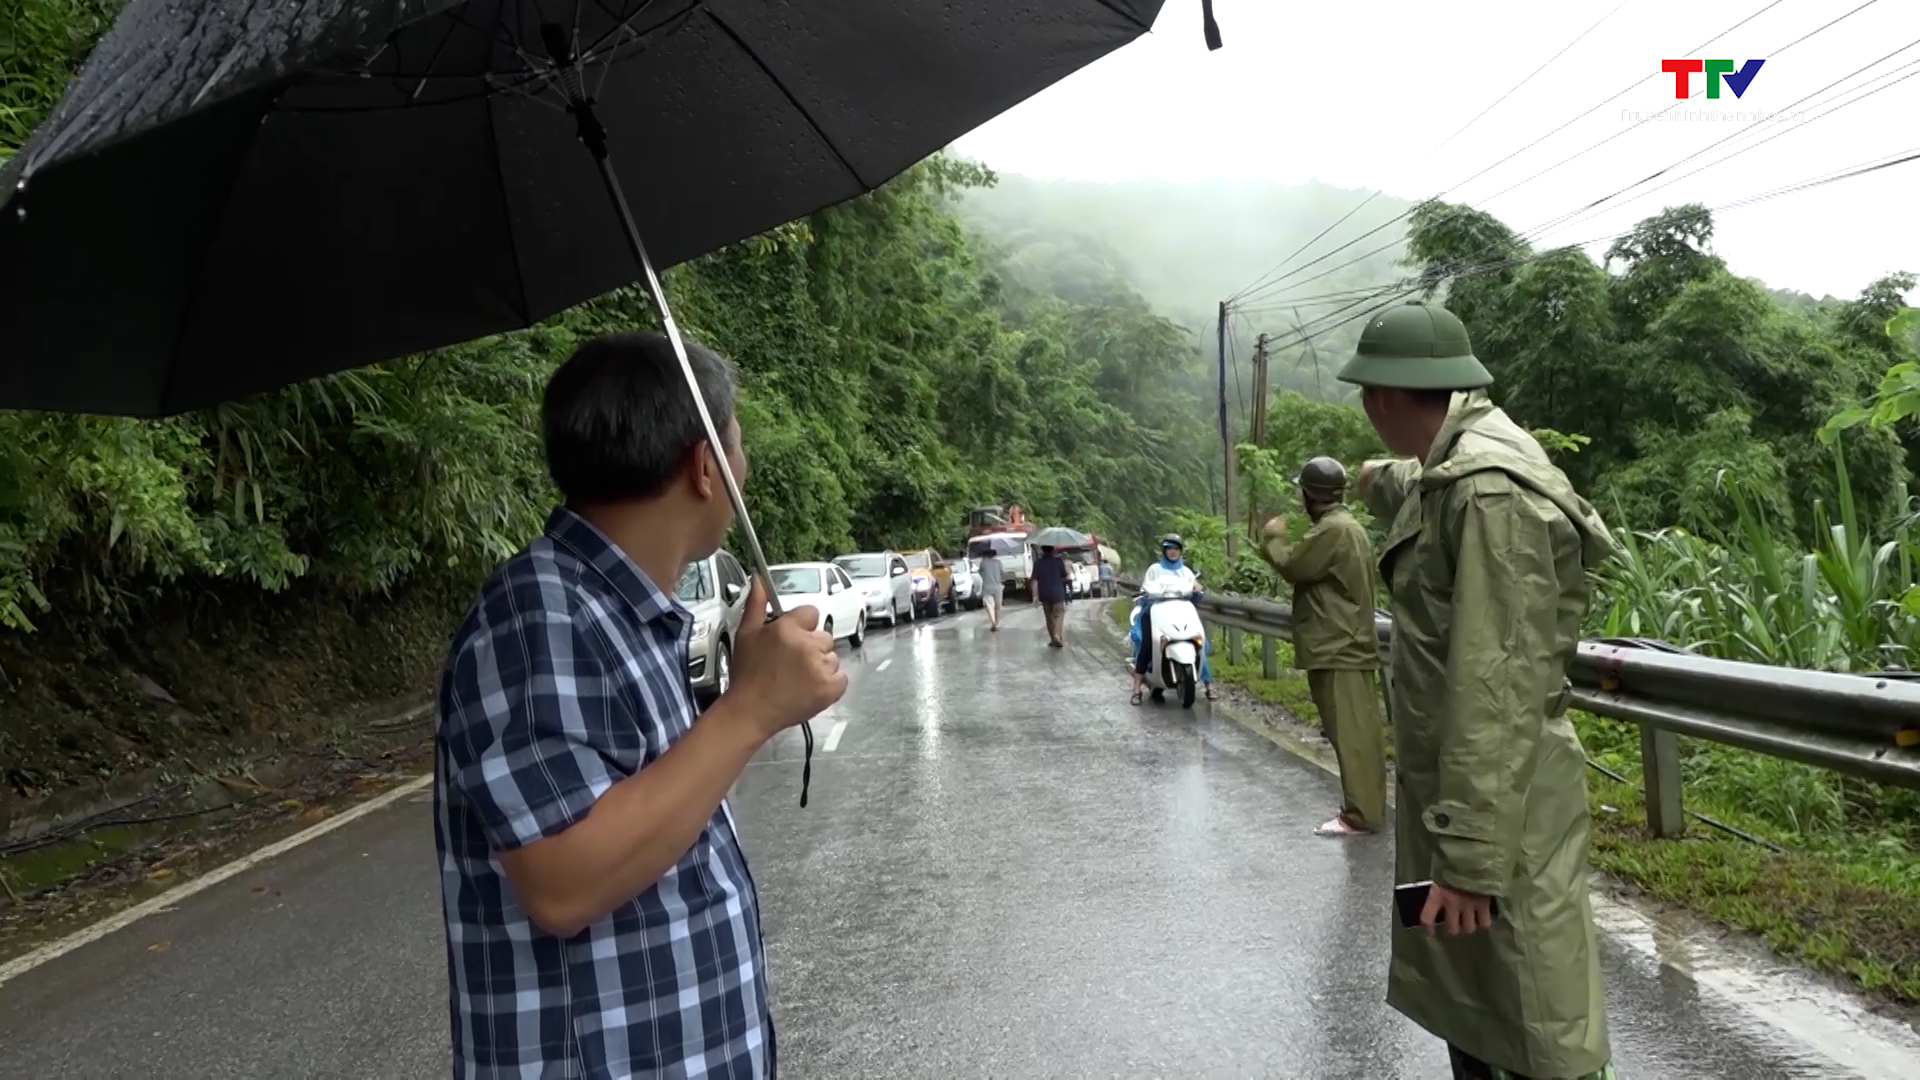 Huyện Quan Sơn: Mưa lớn trên diện rộng làm 1 người mất tích, nhiều tuyến đường bị sạt lở nghiêm trọng - Ảnh 3.